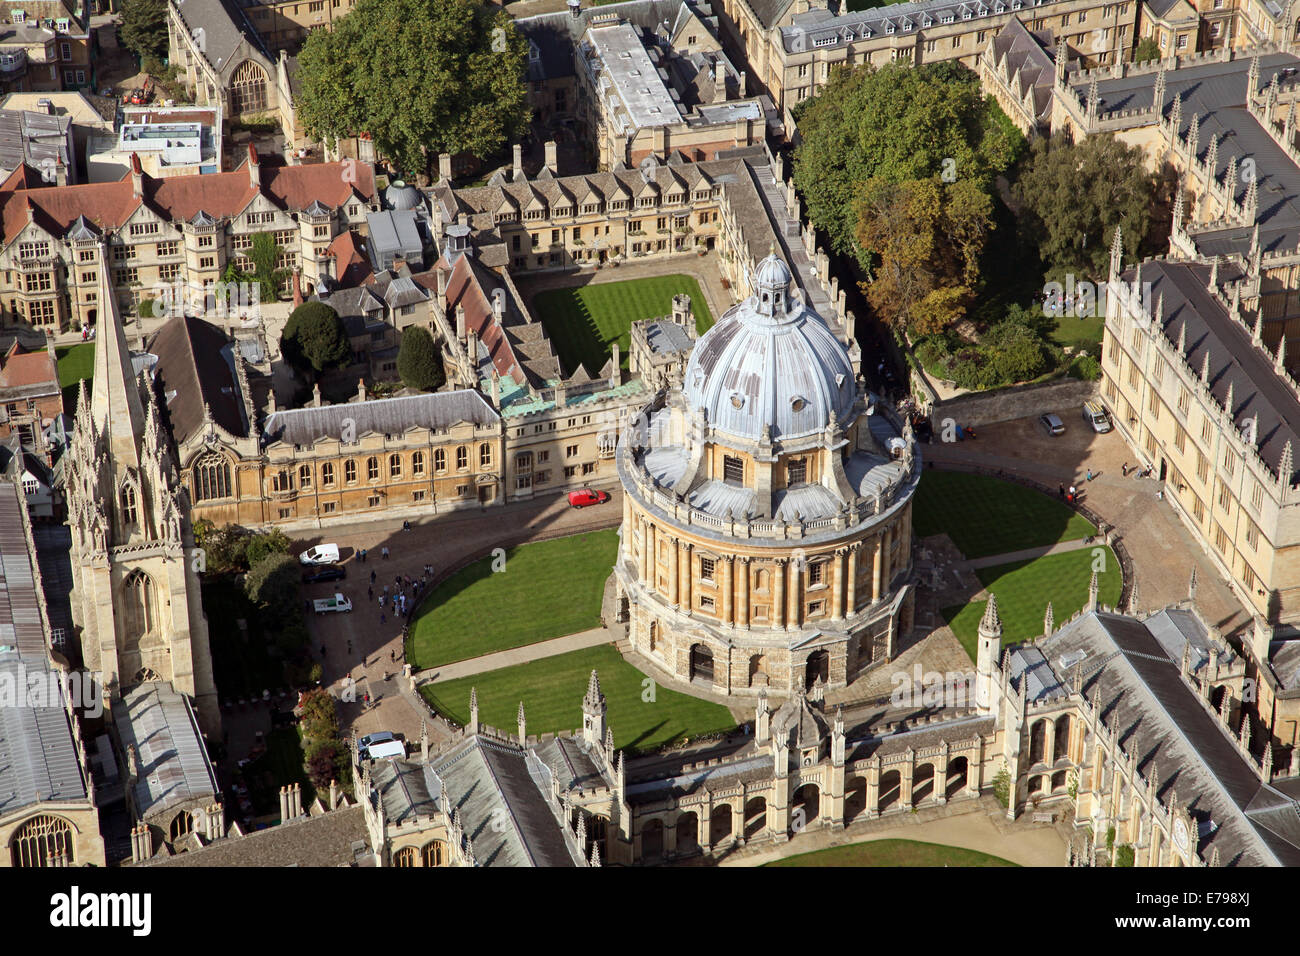 Luftaufnahme des Stadtzentrums von Oxford mit Universitätshochschulen und der Radcliffe Camera & Bodleian Library prominent Stockfoto